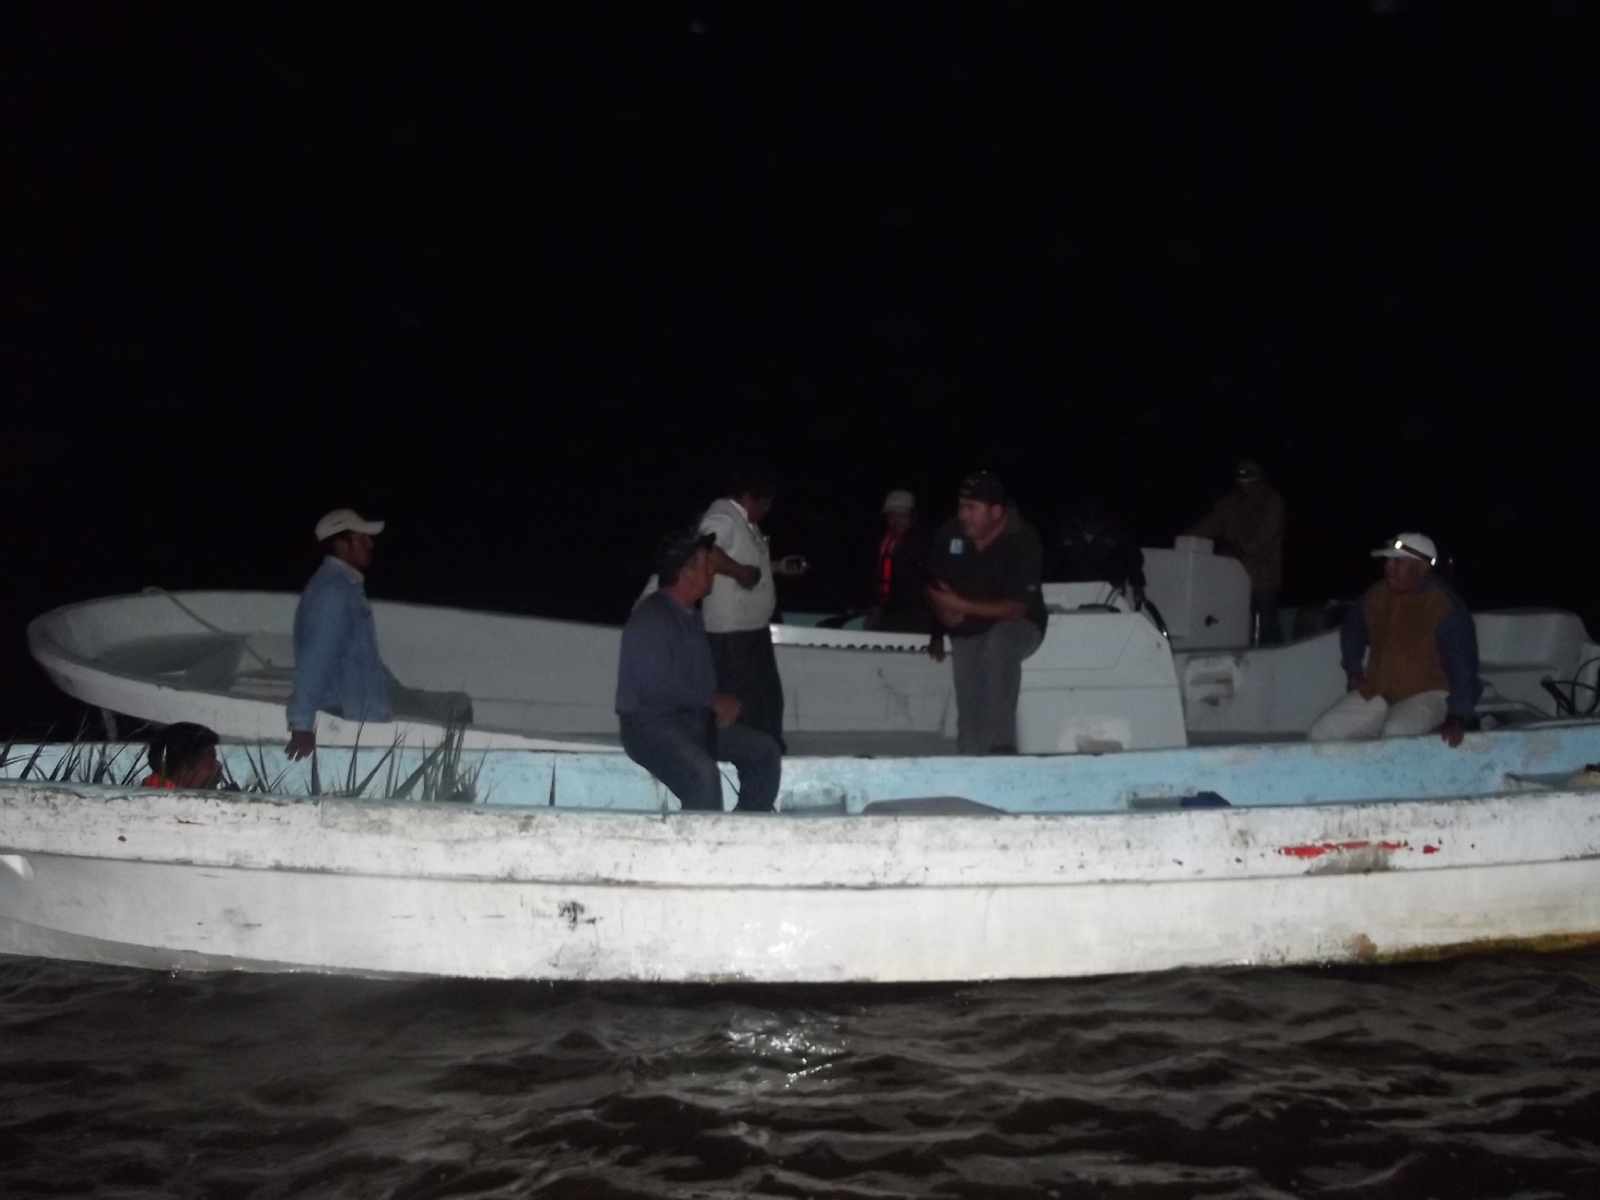 Reanudarán vigilancia para evitar la pesca furtiva en Palizada, Campeche